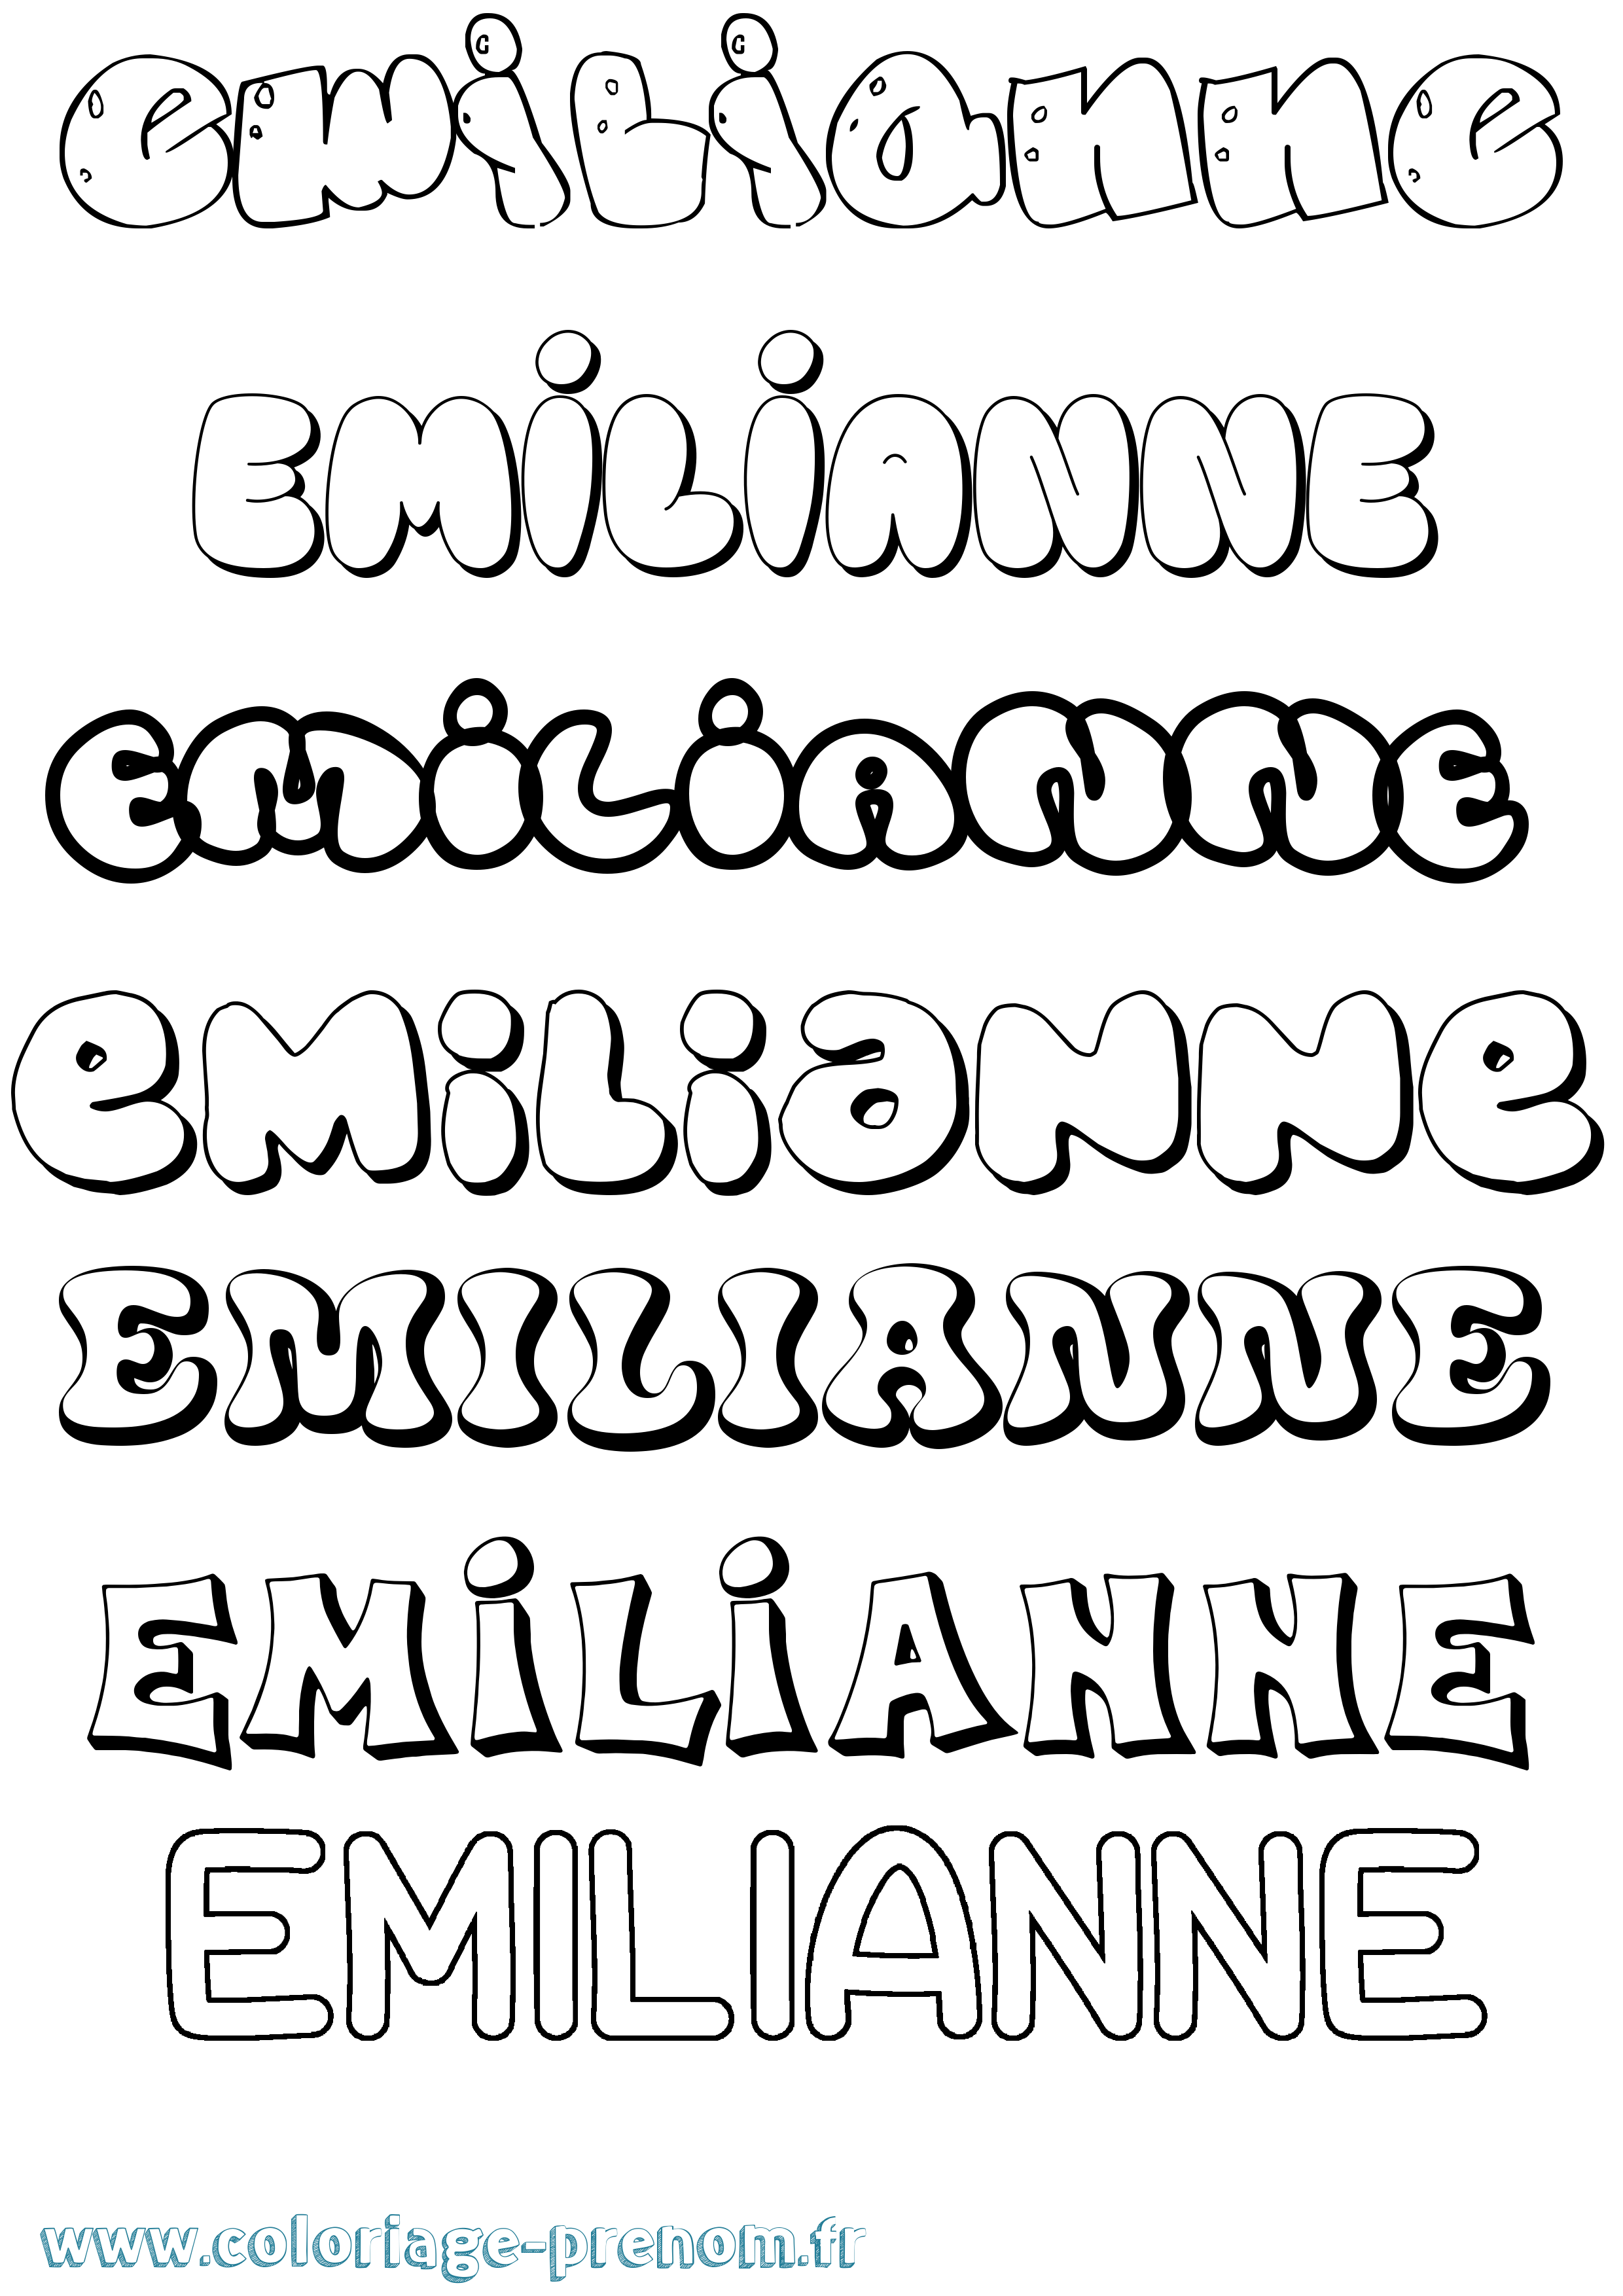 Coloriage prénom Emilianne Bubble